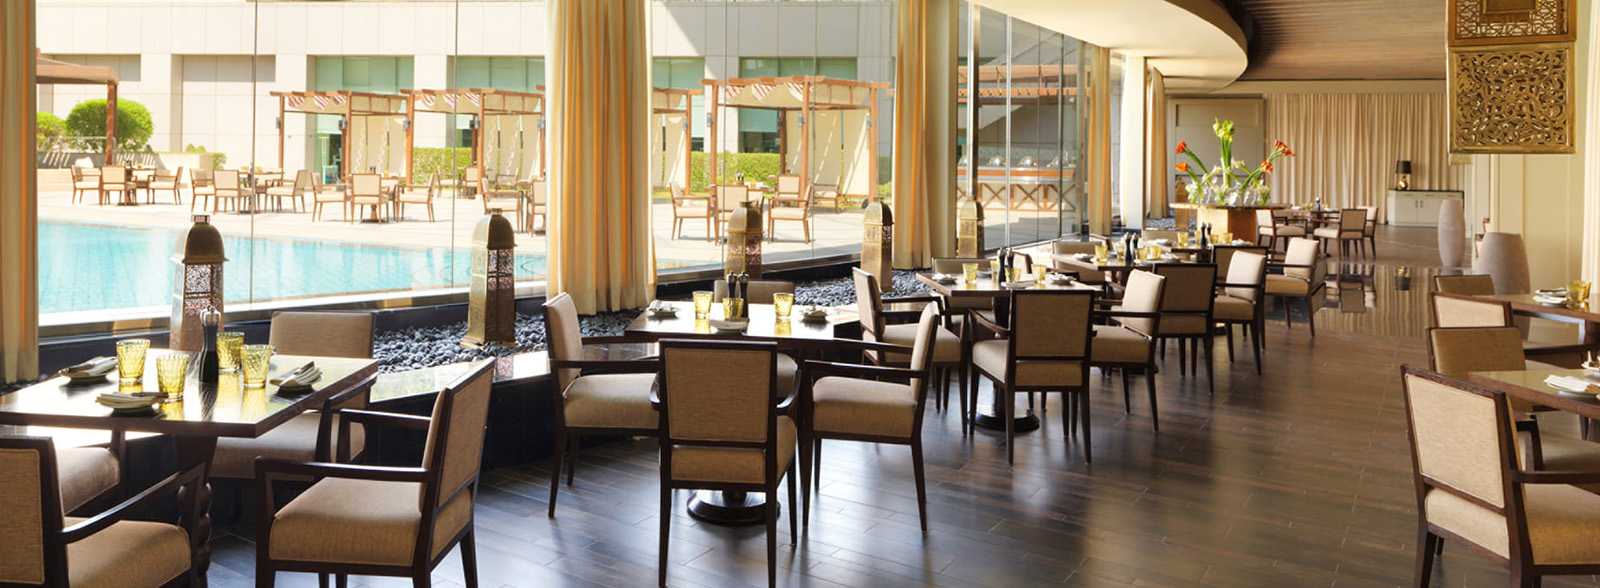 Four Seasons Hotel Riyadh – Restaurant with Pool